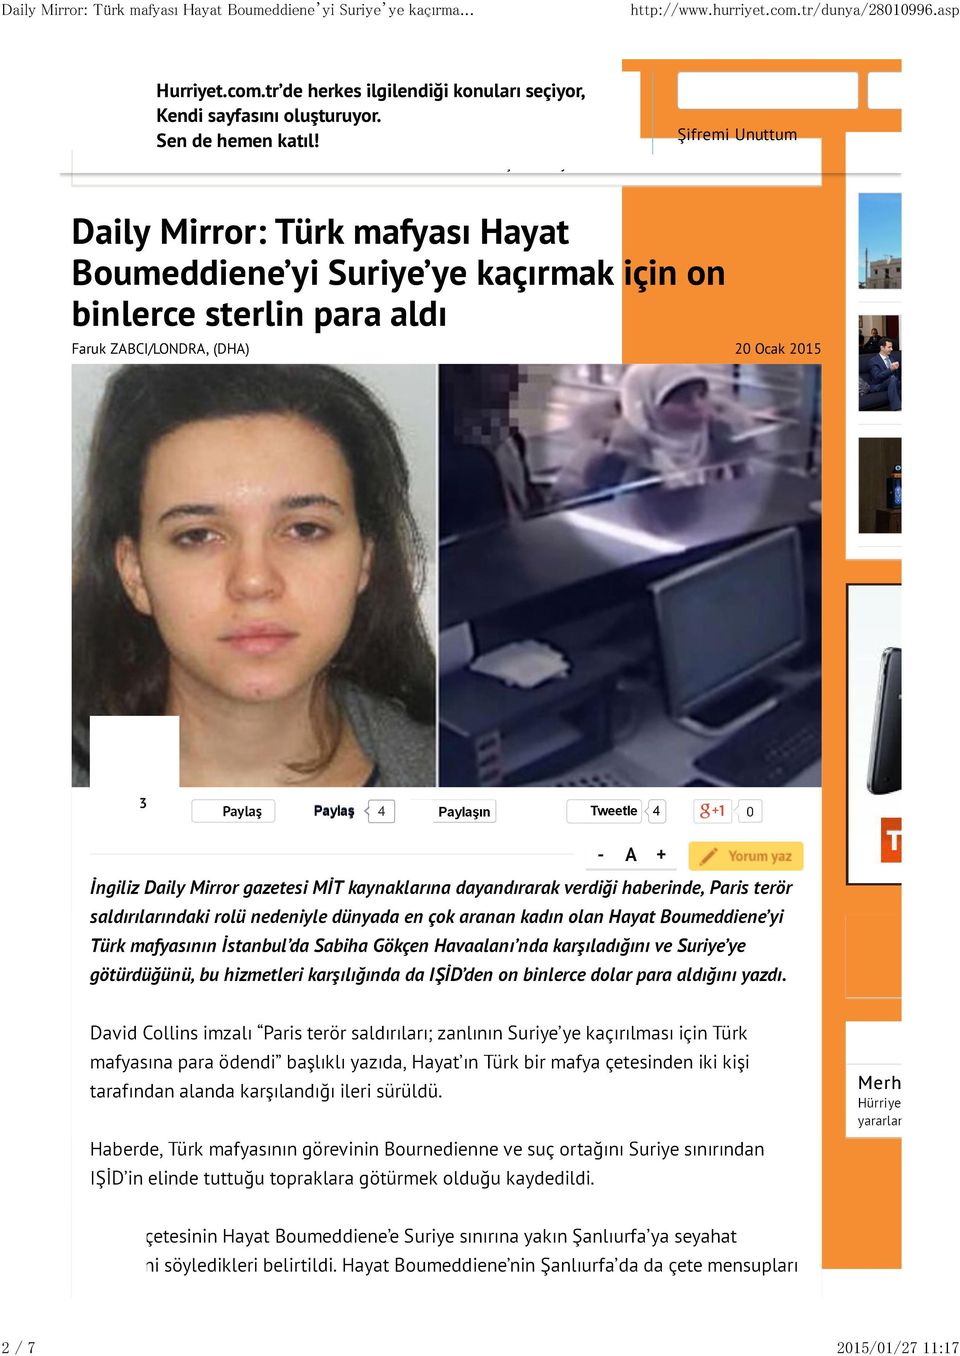 Daily Mirror: Türk mafyası Hayat Boumeddiene yi